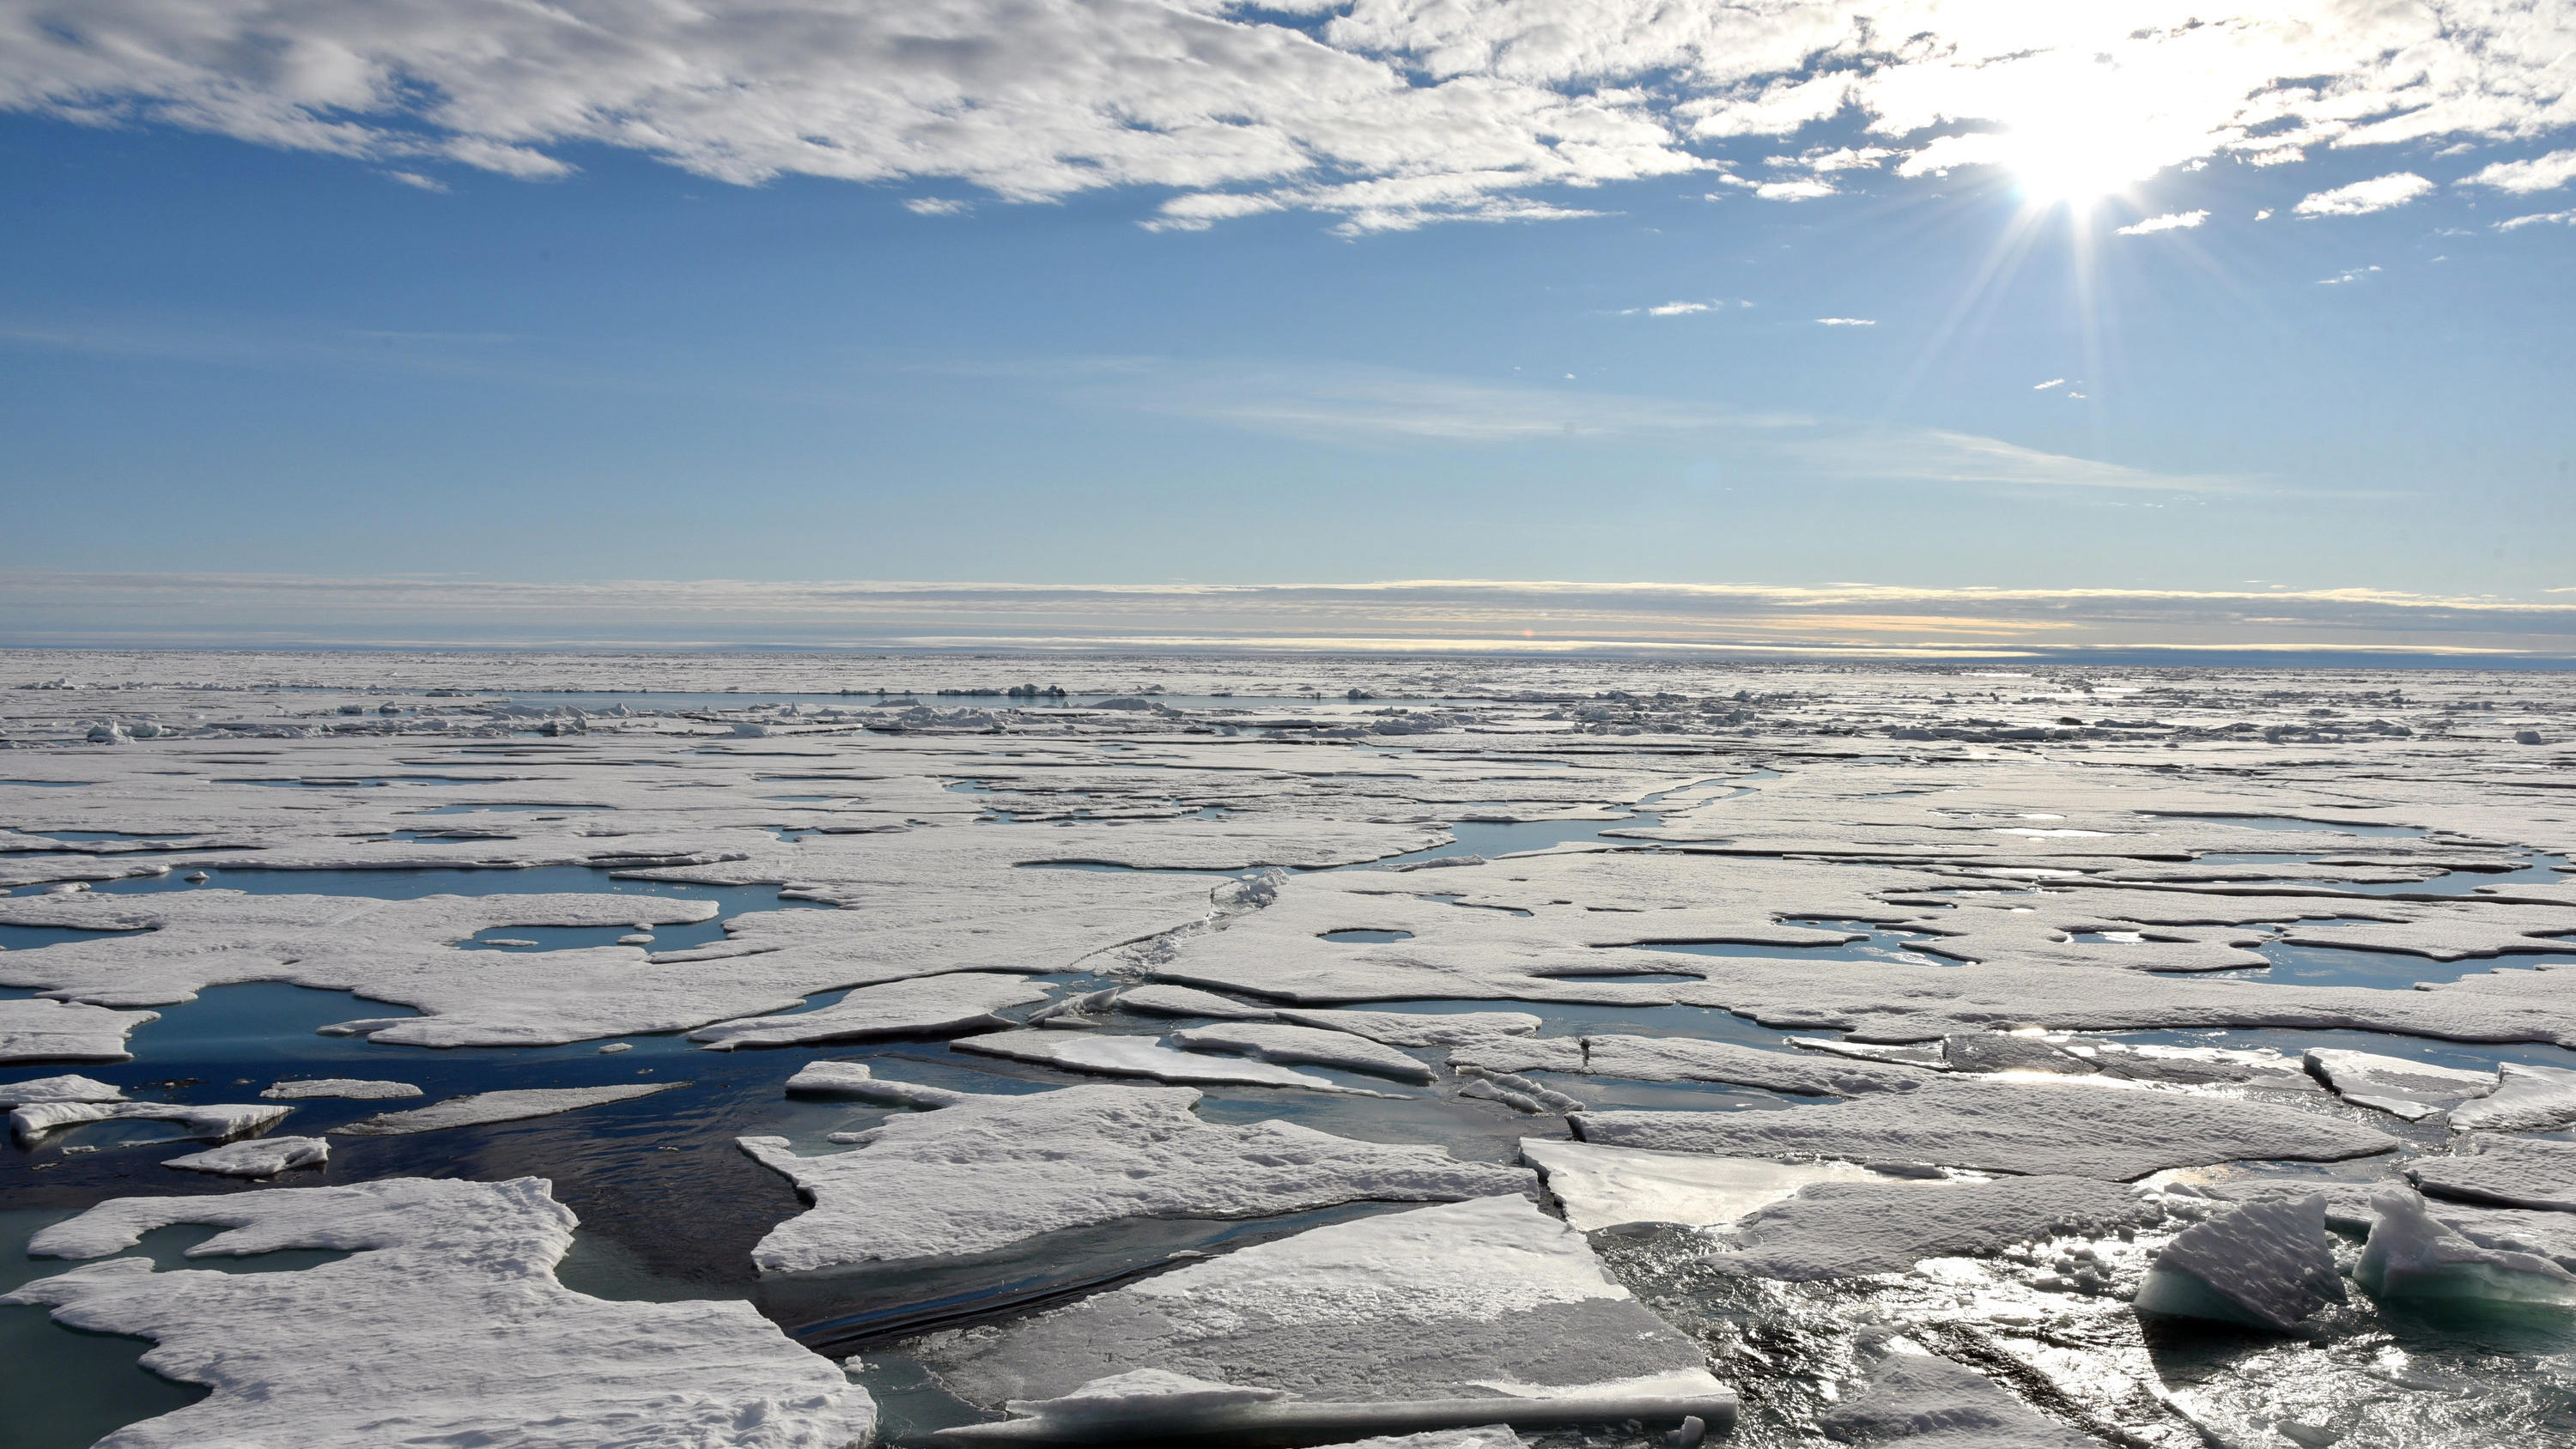 ARCHIV - 16.08.2015, ---, Nordpol: Auf dem Arktischen Ozean am Nordpol schwimmen Eisplatten. Das militärische Vorgehen Russlands wirkt sich nach Angaben von Nato-Generalsekretär Stoltenberg auch auf die Arktis aus. (Zu dpa "Stoltenberg: Neue Sicherhe